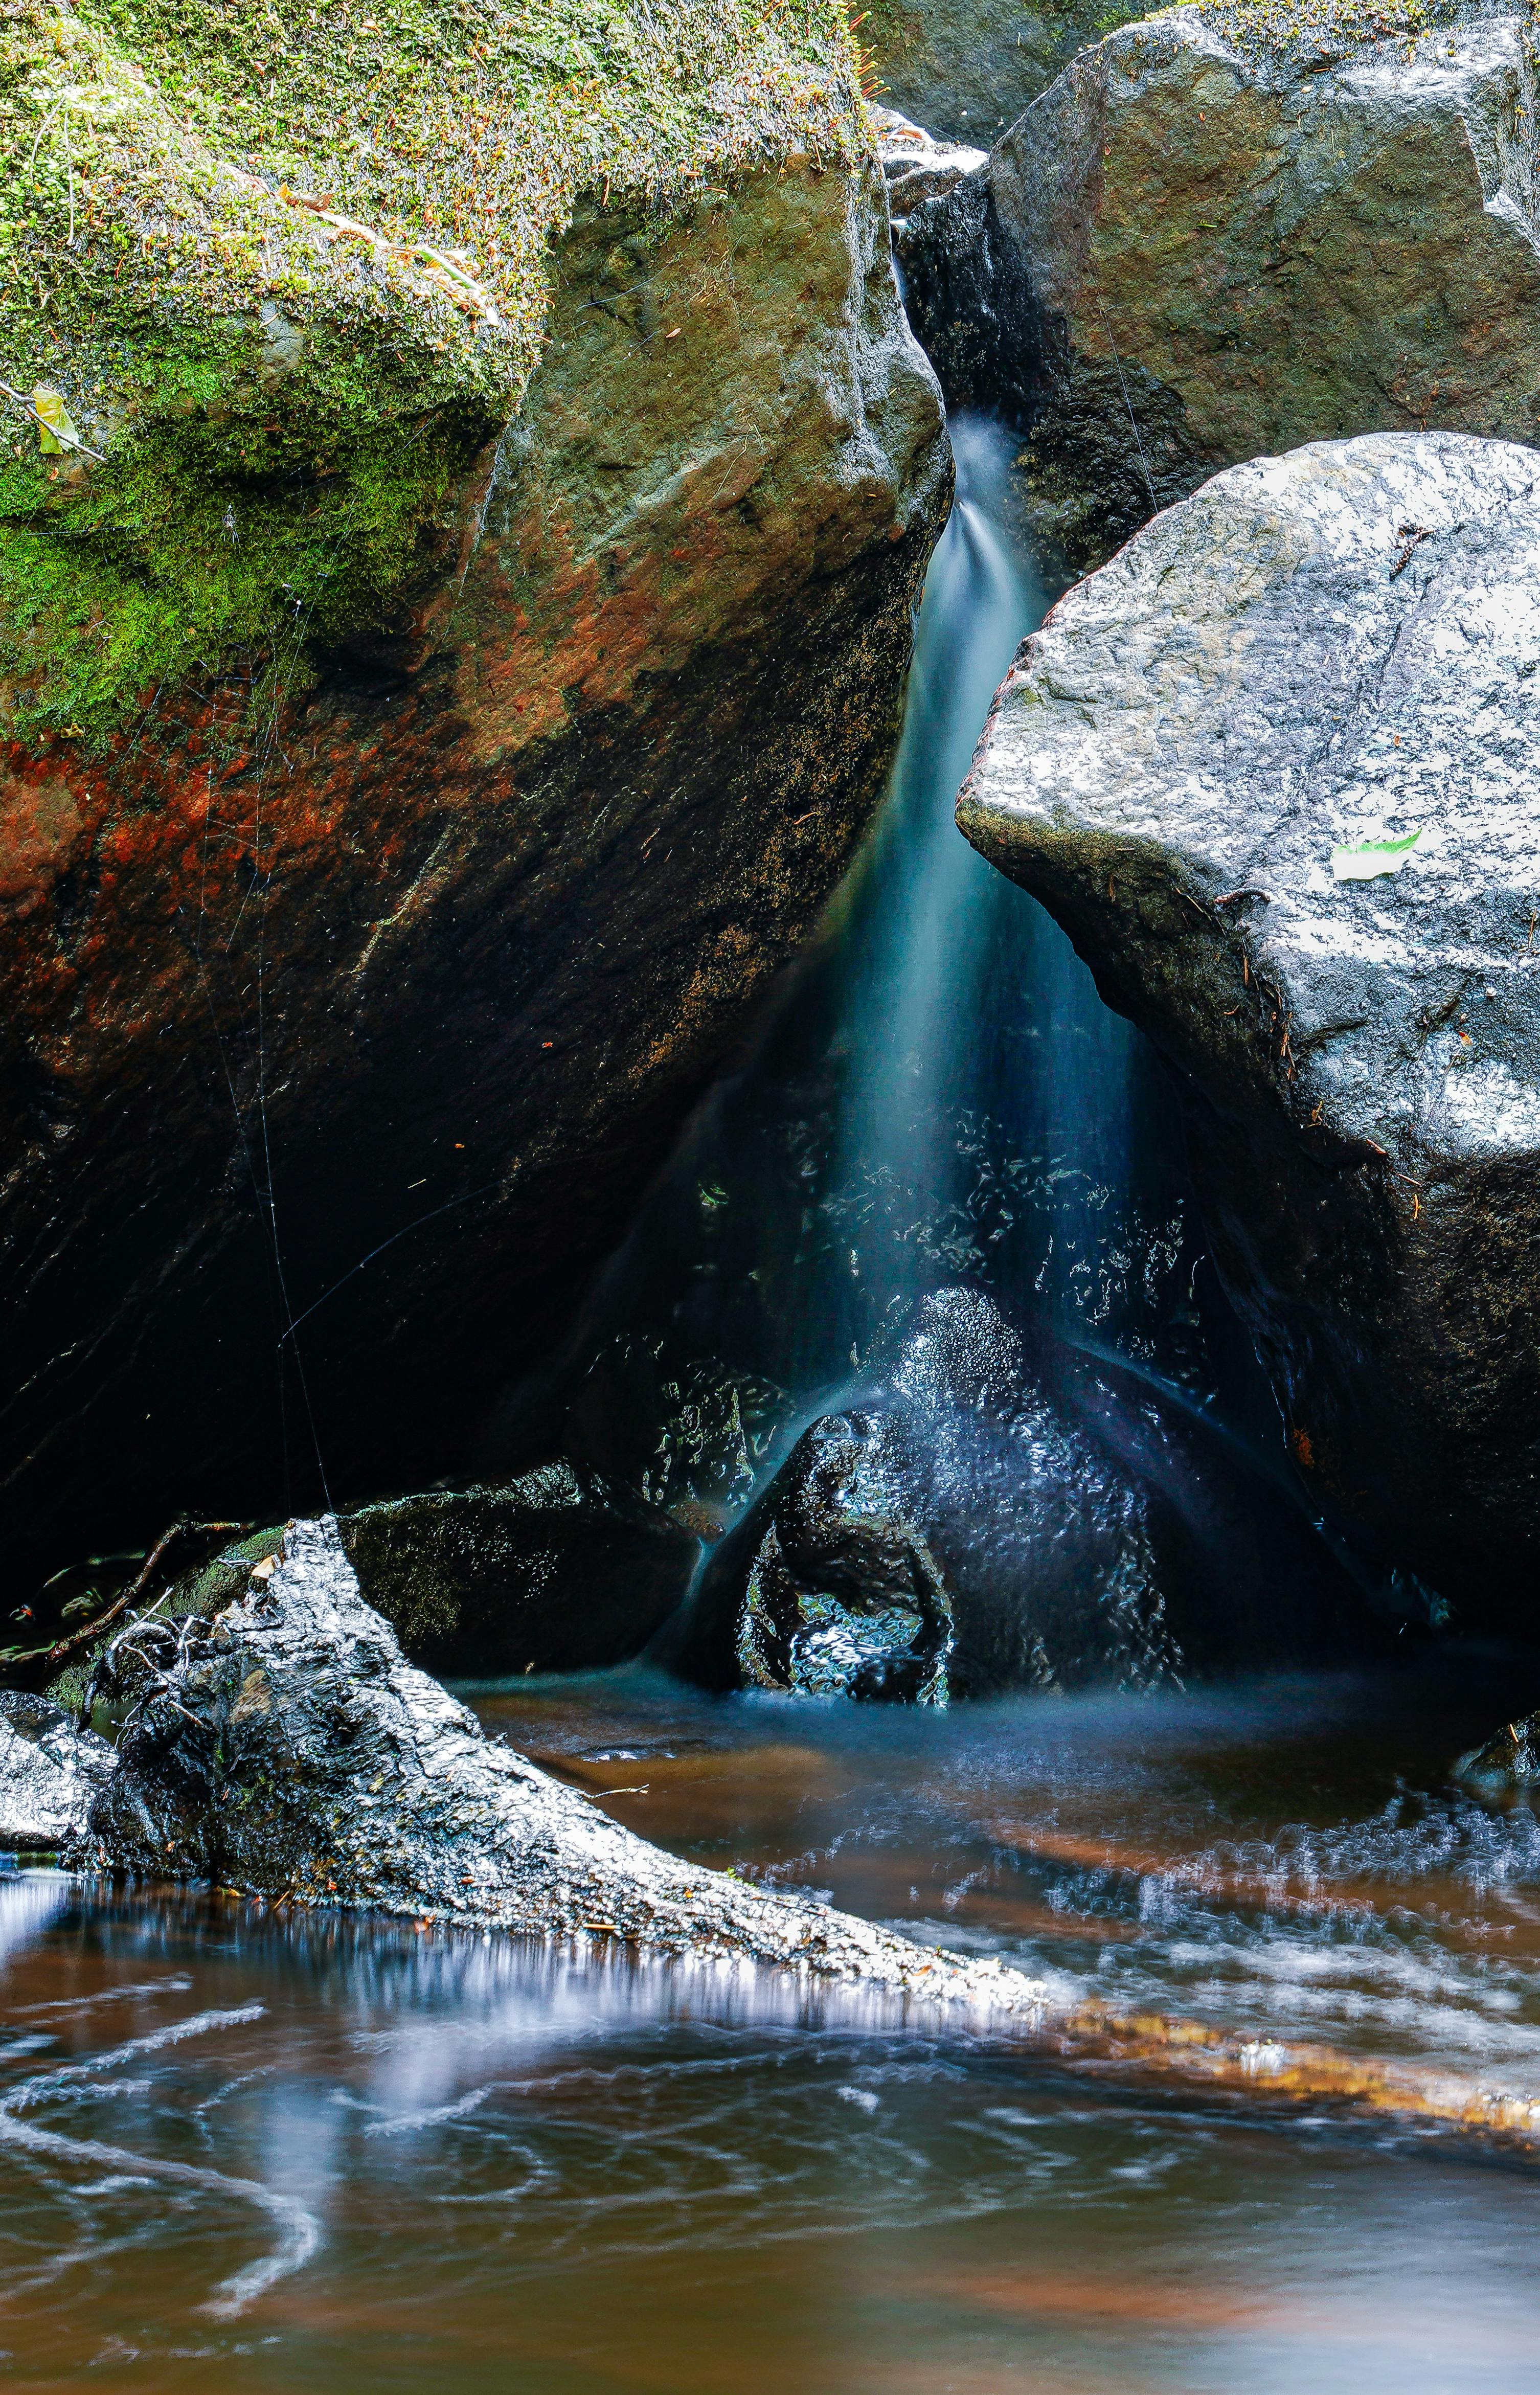 water flowing between large rocks